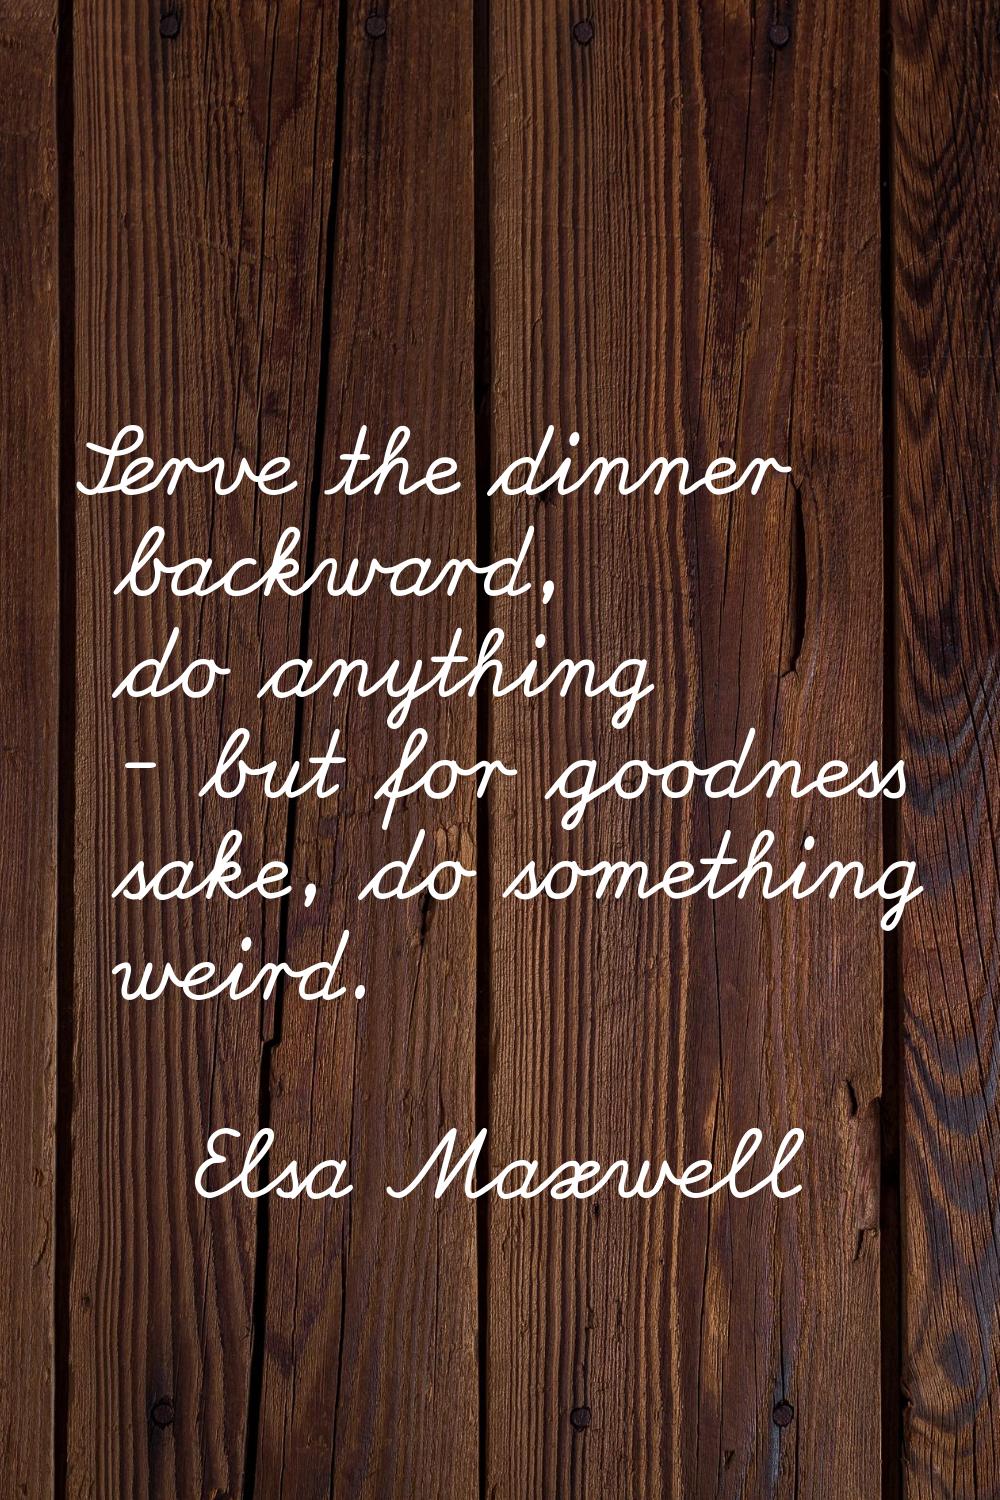 Serve the dinner backward, do anything - but for goodness sake, do something weird.